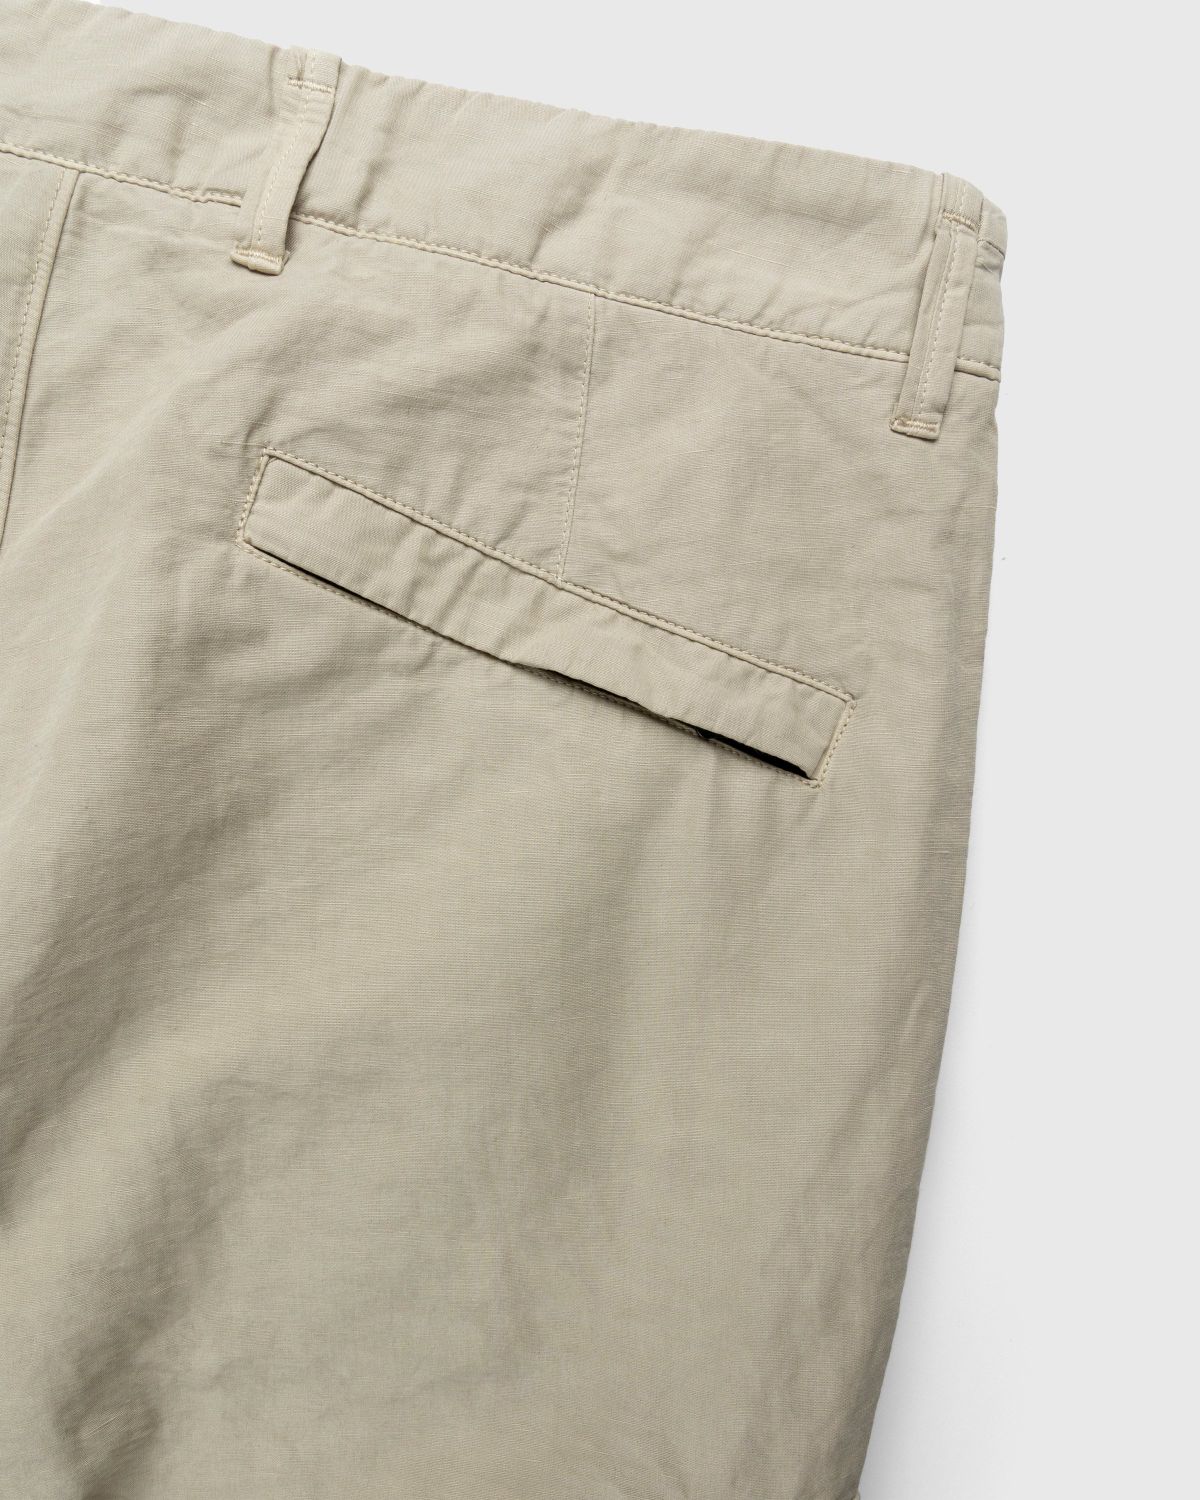 Stone Island – 31706 Garment-Dyed Cargo Pants Khaki - Cargo Pants - Beige - Image 4